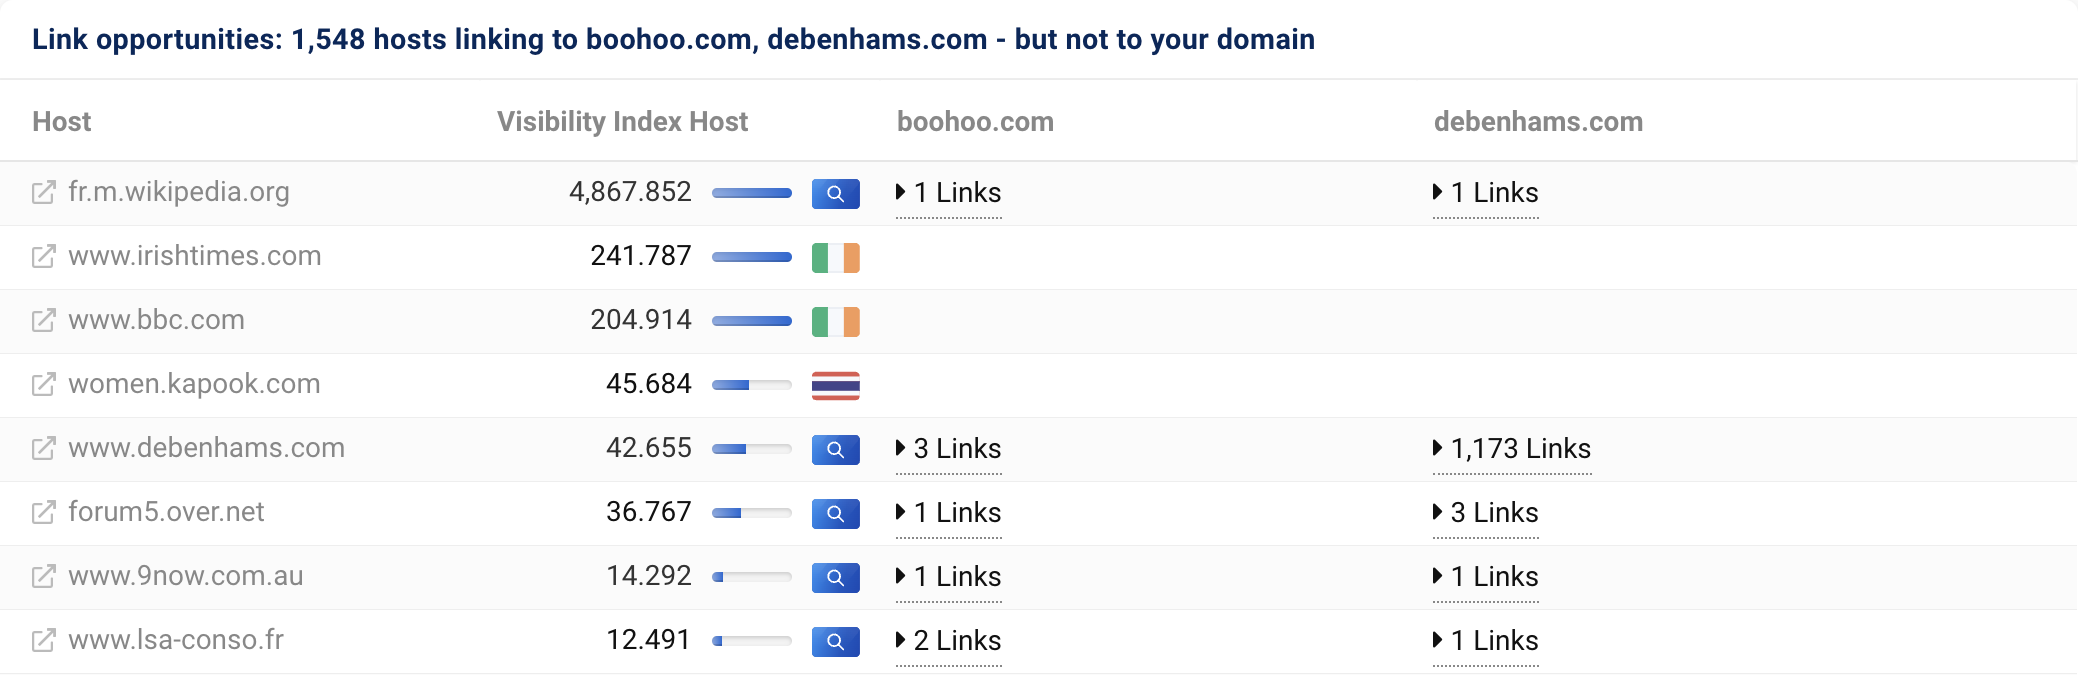 1,548개의 호스트가 boohoo.com 및 debenhams.com에 연결되어 있지만 도메인 asos.com에는 연결되어 있지 않습니다.